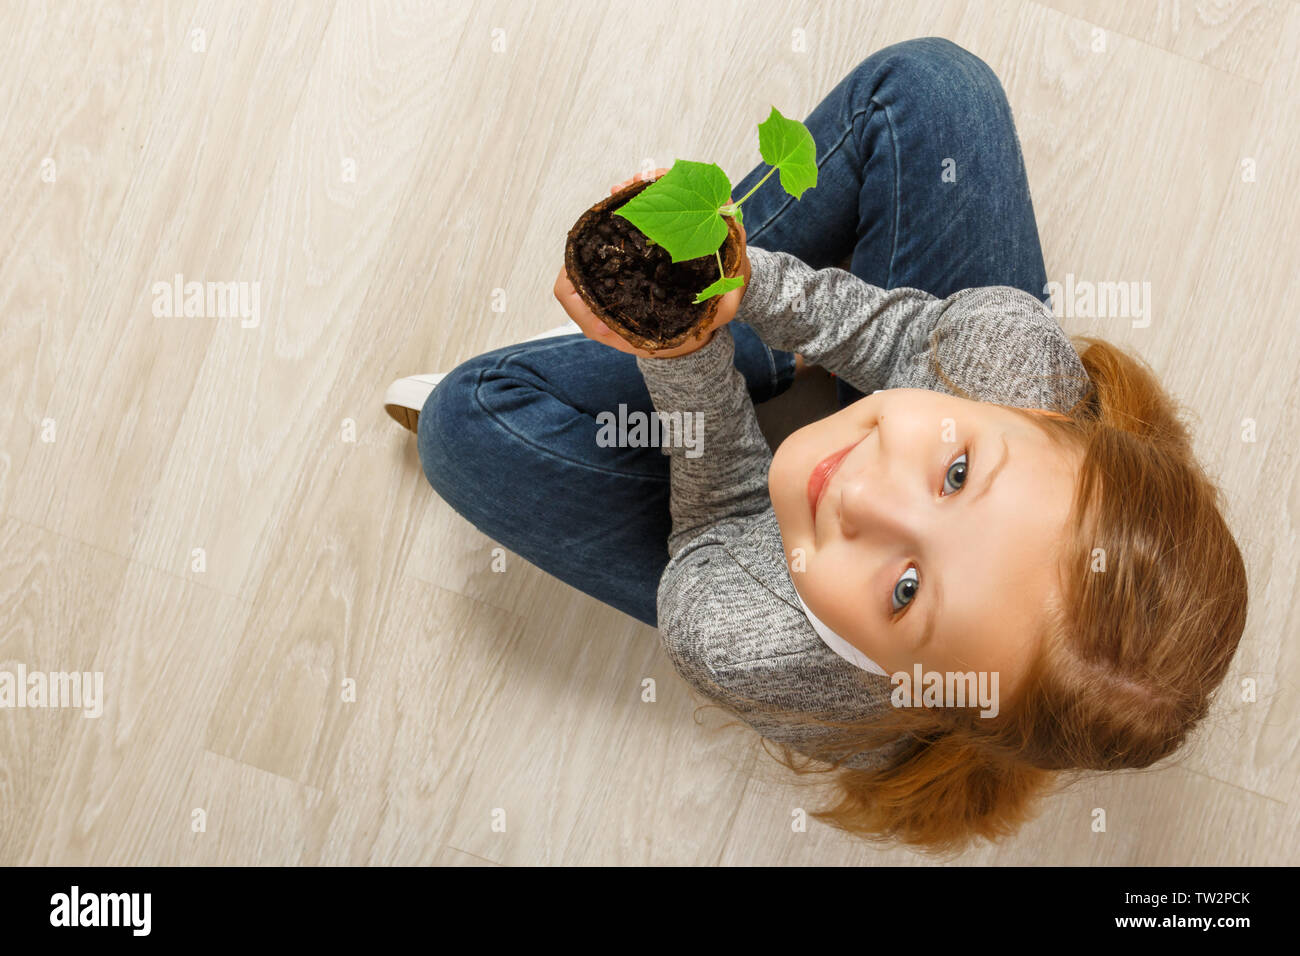 Vista dall'alto di un bambino seduto sul pavimento e tenendo una pianta giovane. La bambina sta guardando la telecamera. Il concetto di ecologia, natura cura. Foto Stock